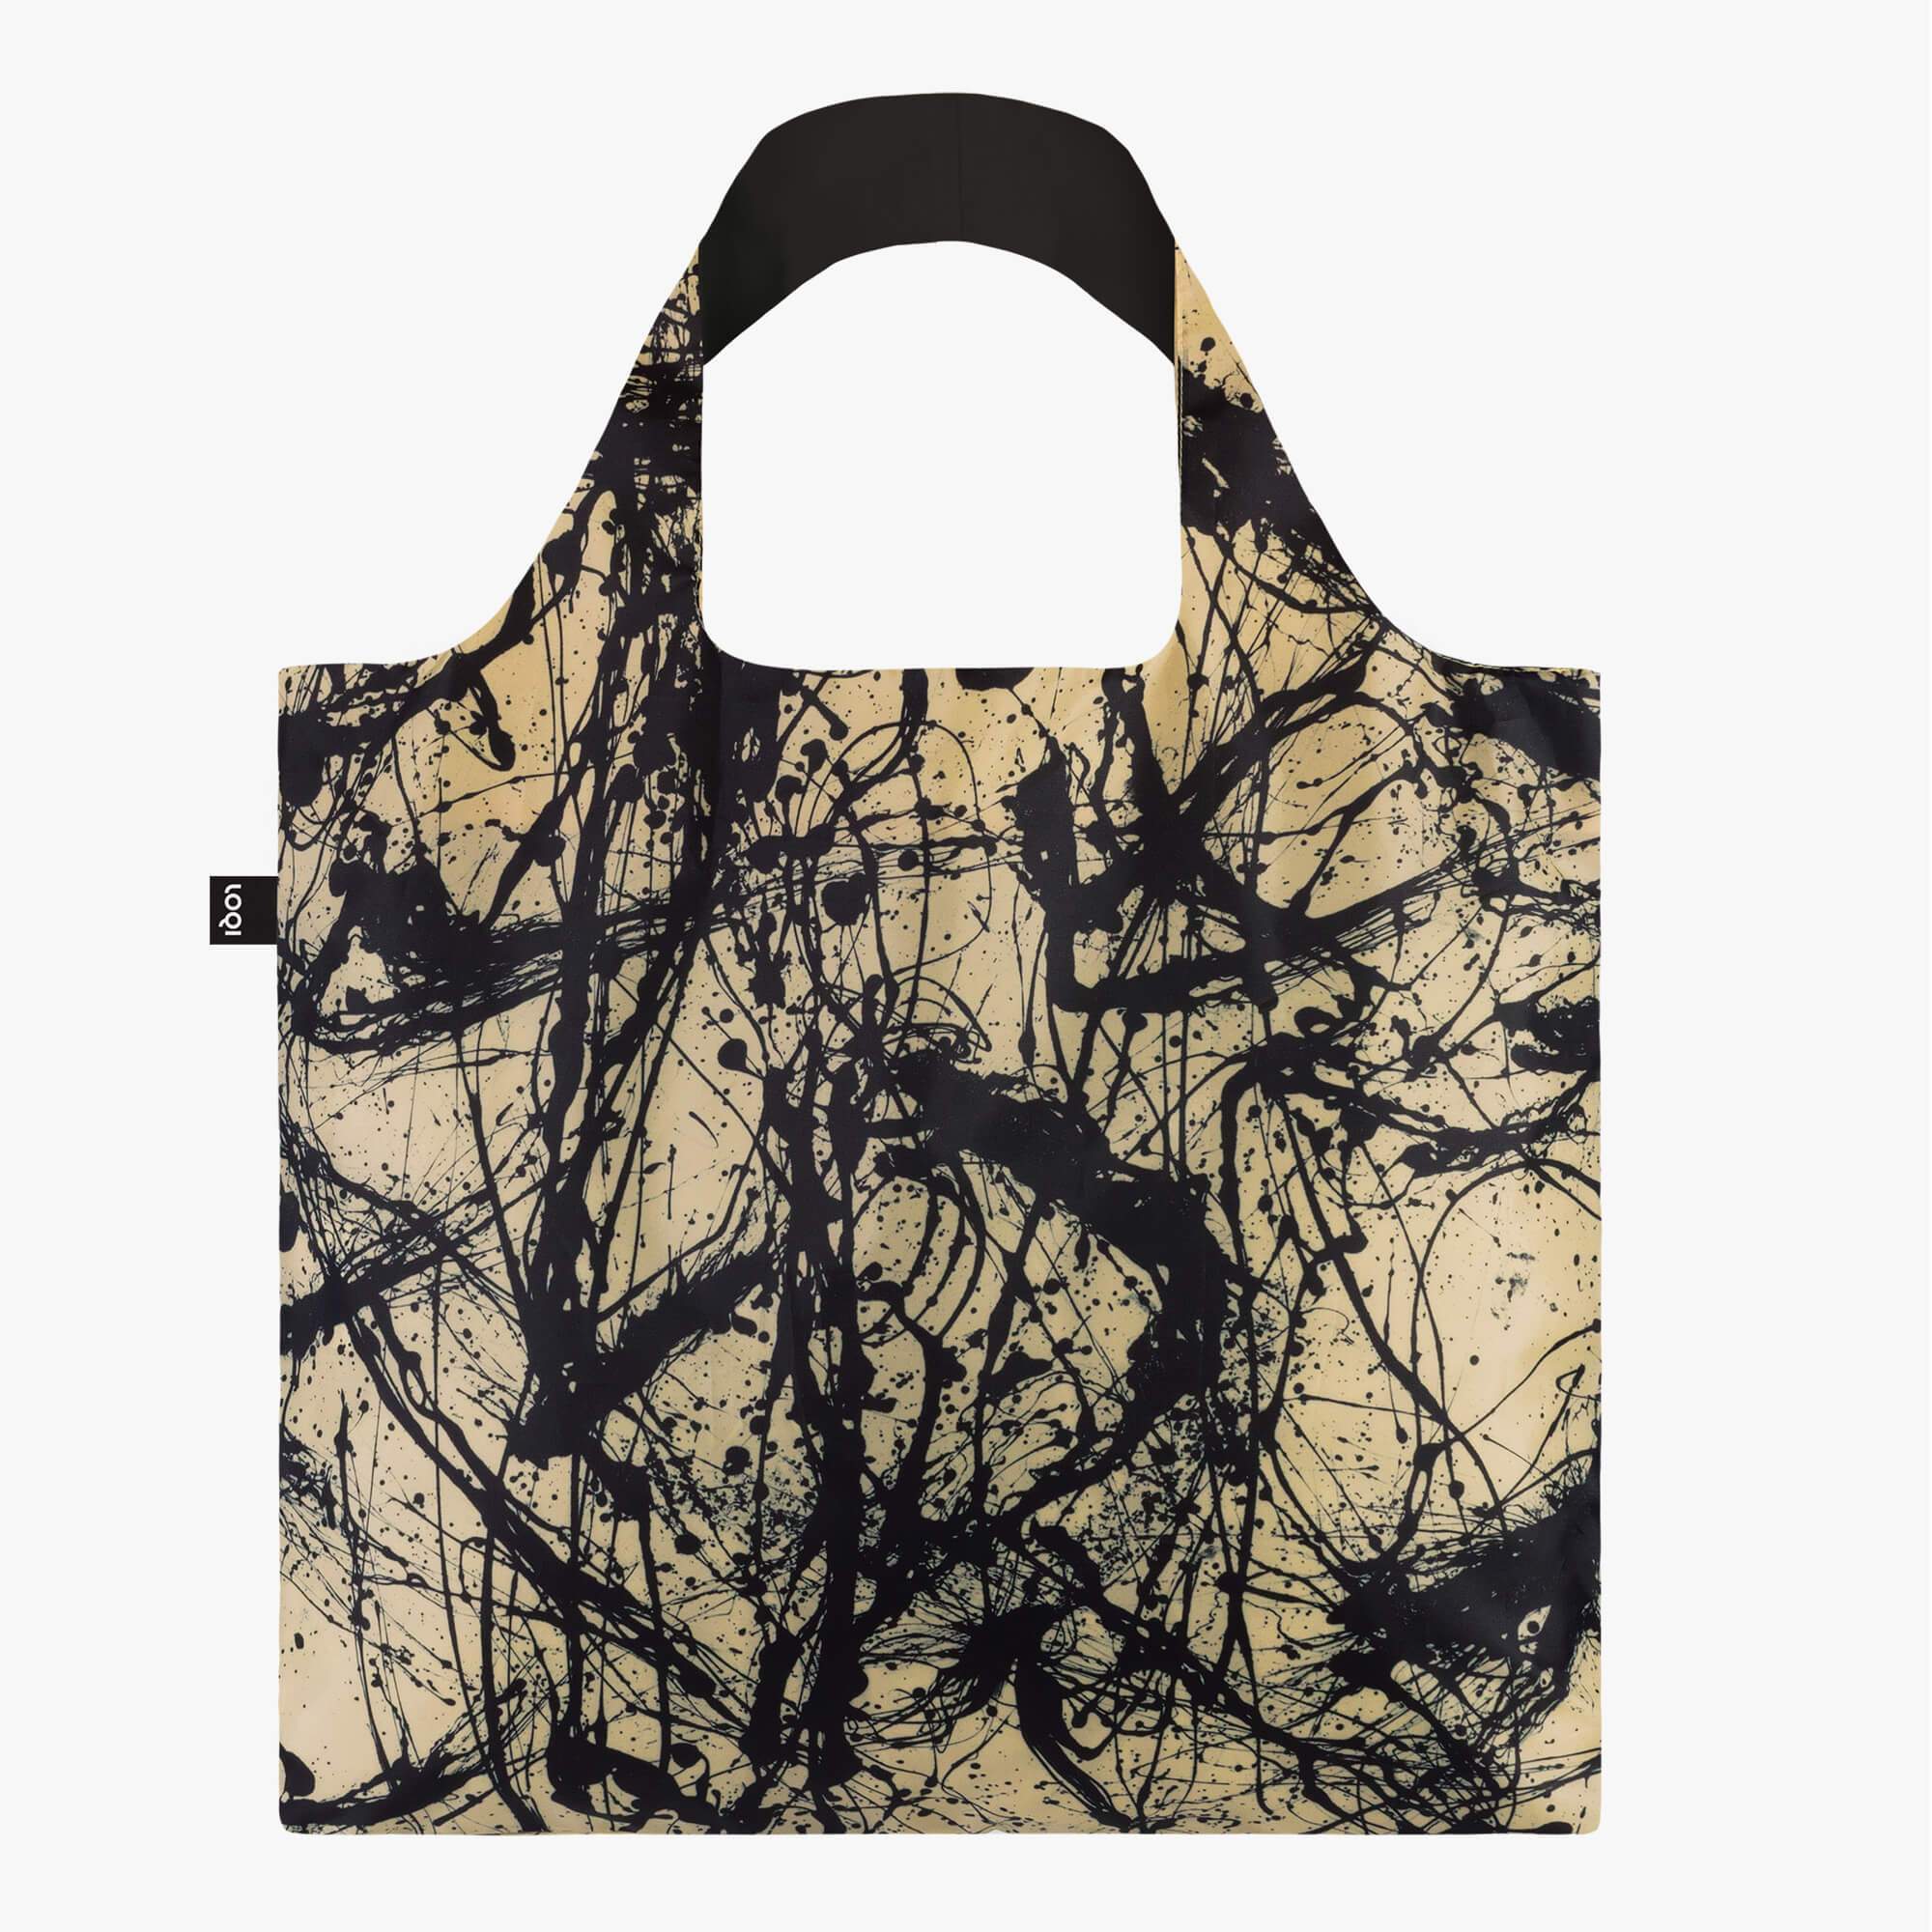 Jackson Pollock Shopping Bag